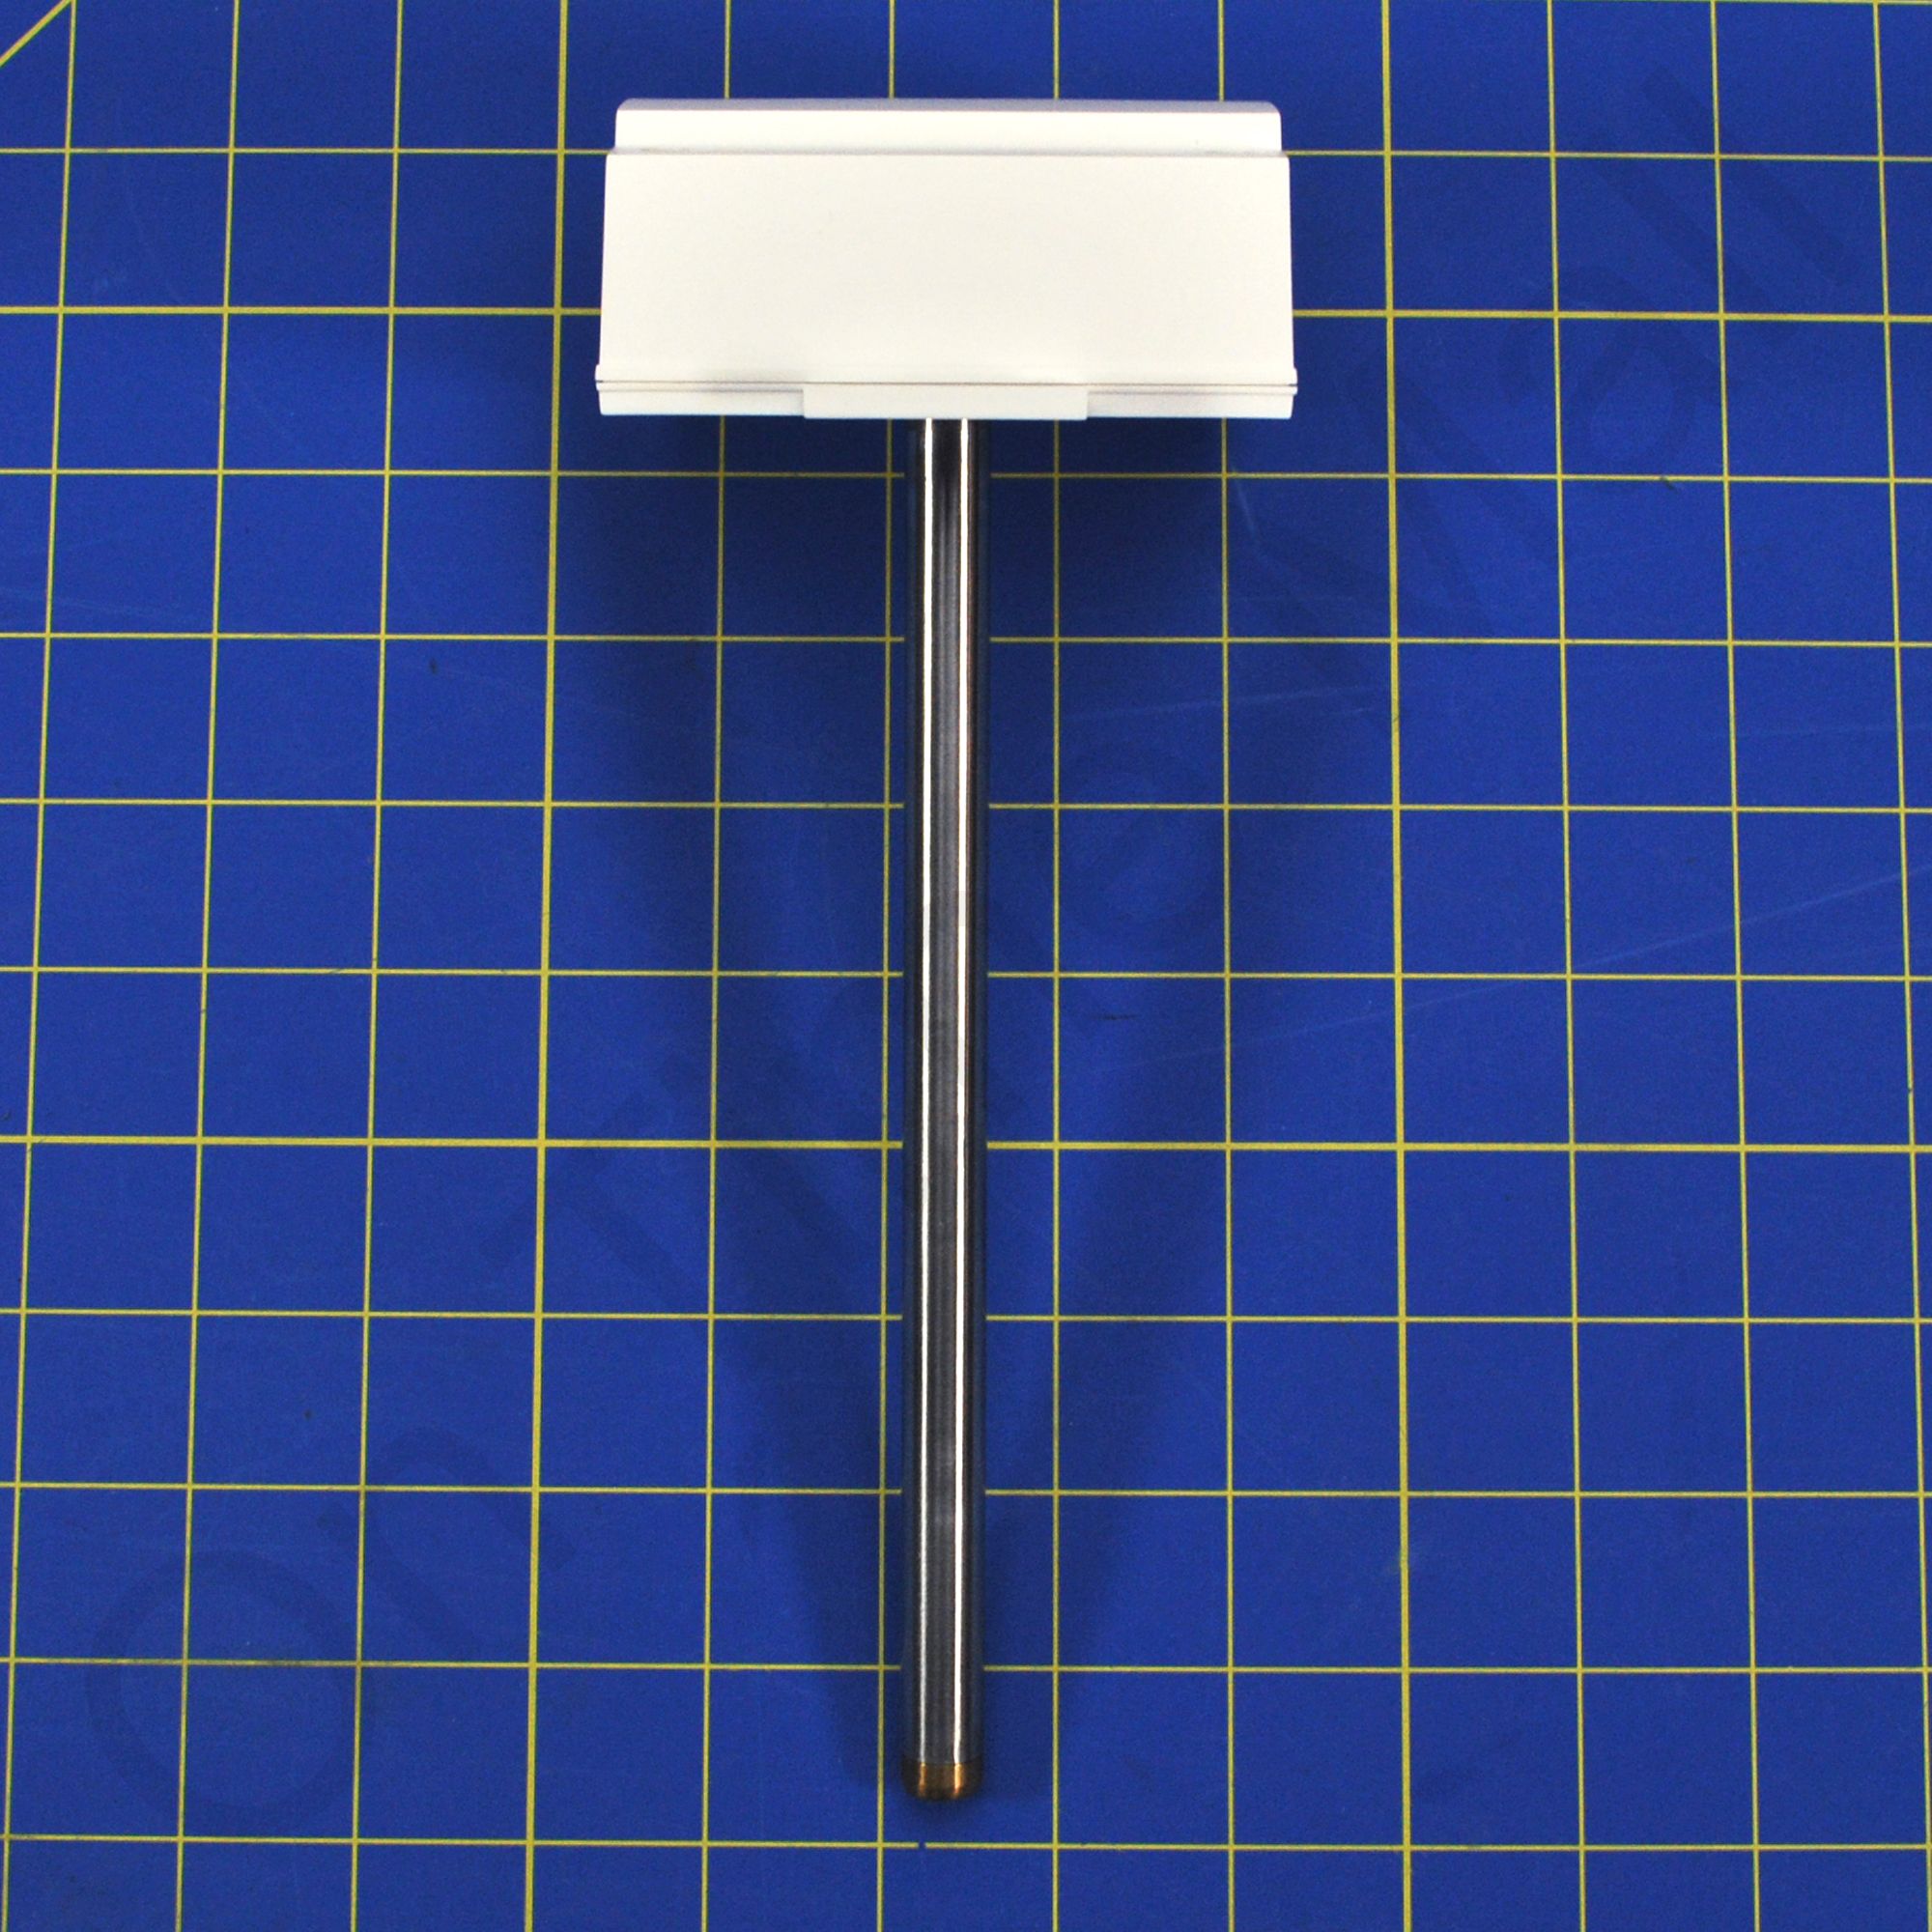 Vent systems Ventilador el/éctrico de 150 mm de di/ámetro con temporizador sensor de humedad para uso en interiores.